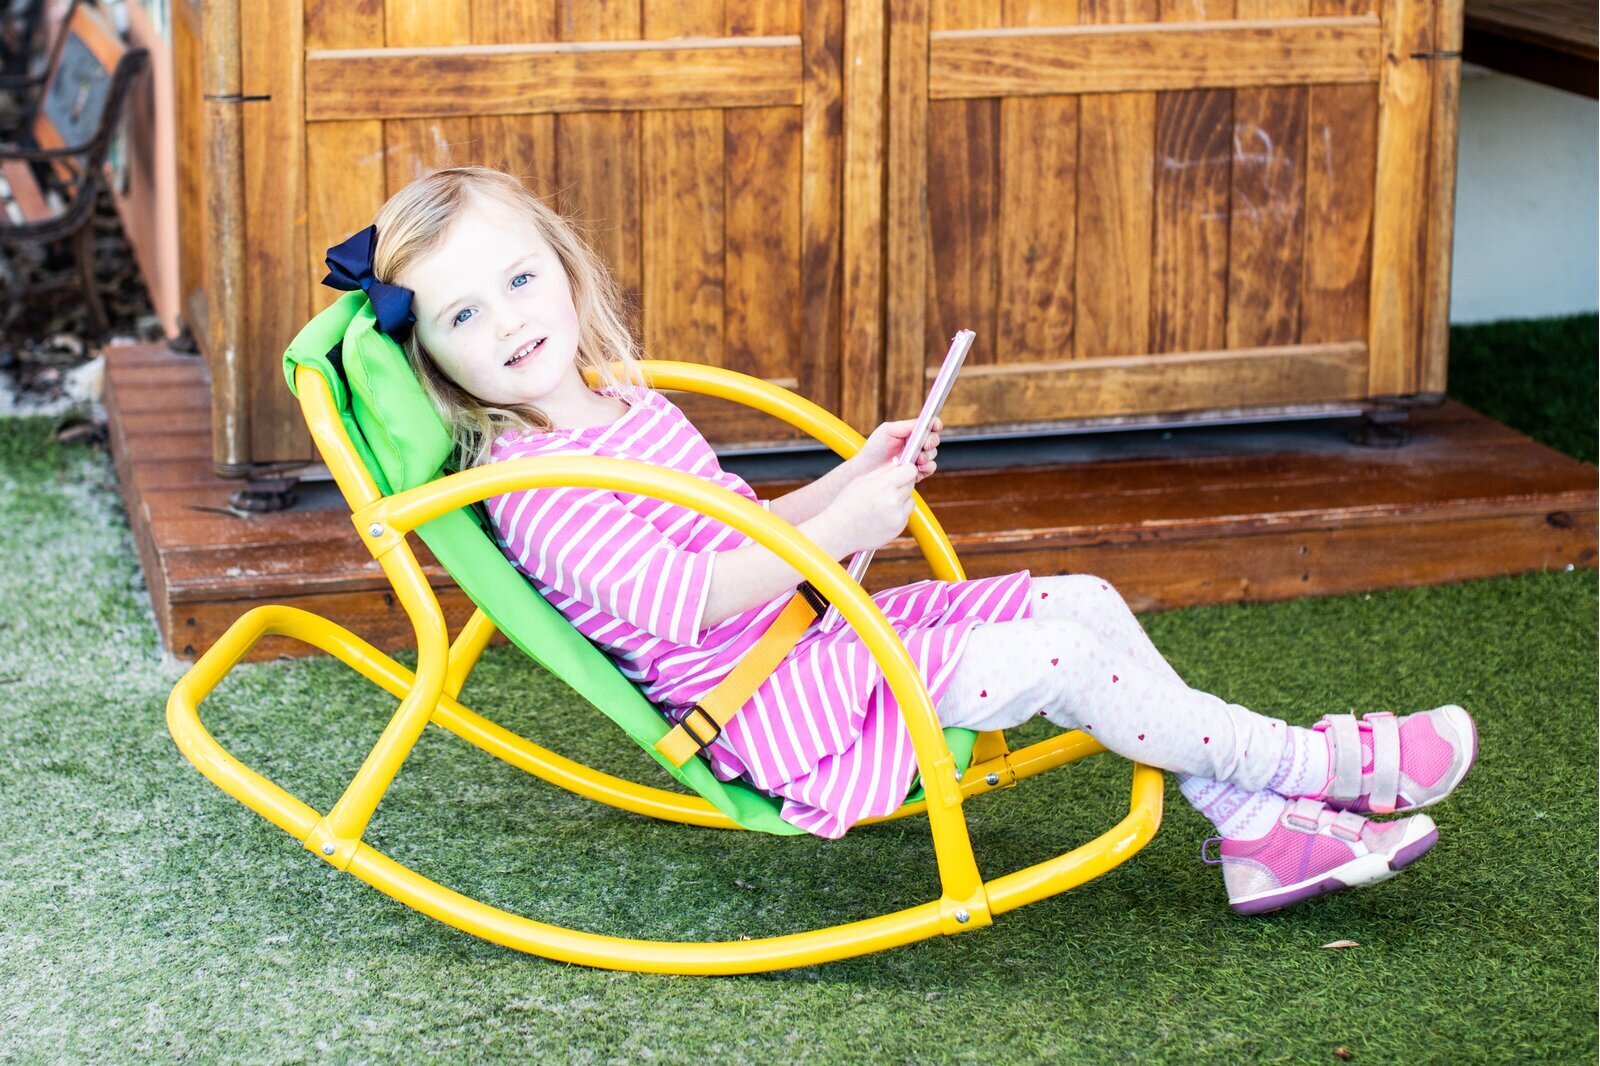 Zebra Safari Wooden Rocking Chair for Children Teamson Kids 